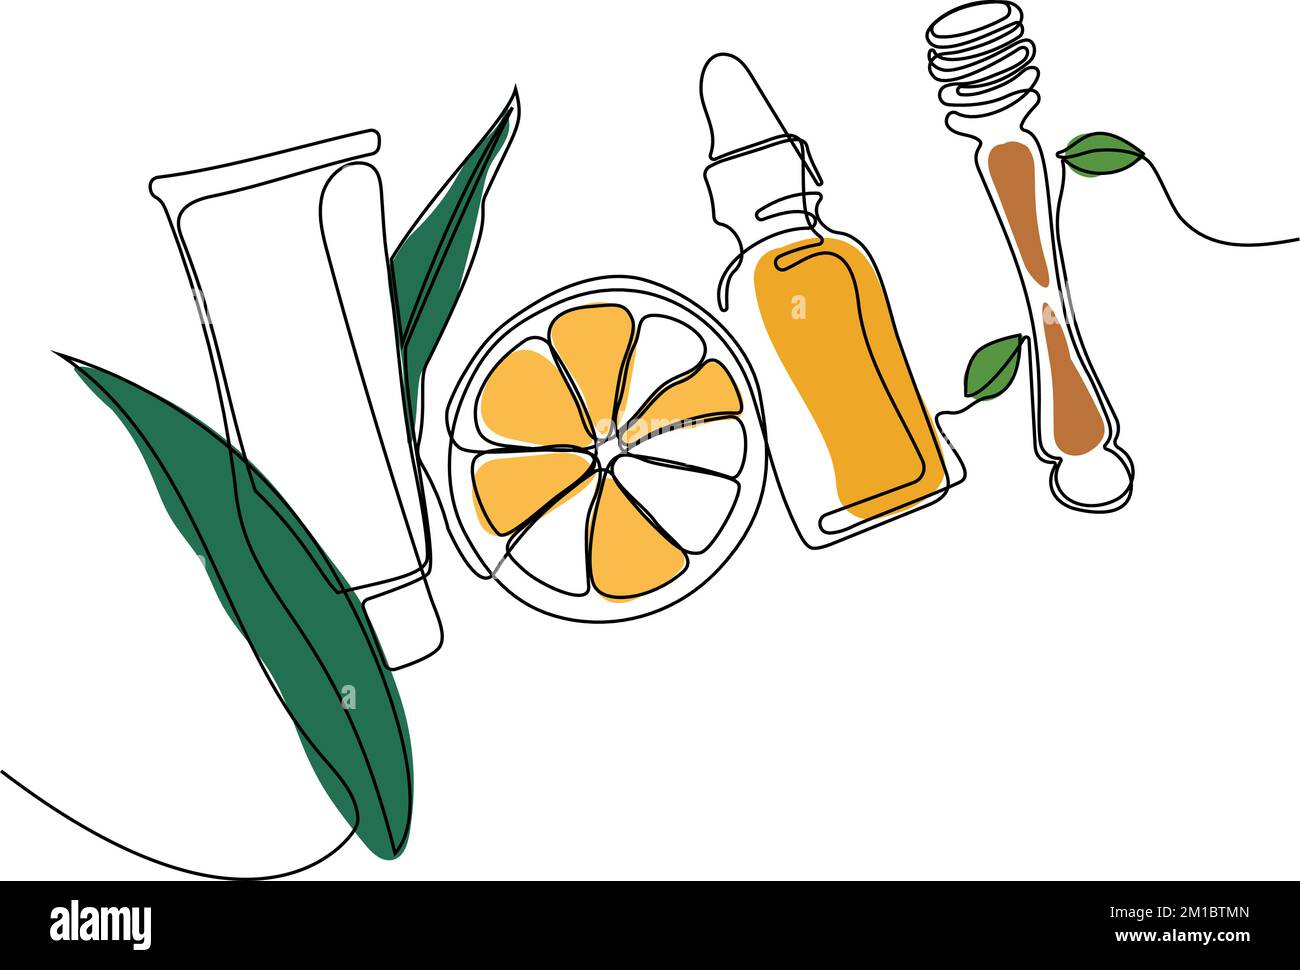 Kontinuierliches Zeichnen einer Reihe von Flaschen mit Öl oder Honig oder Zitronen- oder Limettensaft zum Schrubben und für die Körperpflege mit natürlichen pflanzlichen Hautpflegeprodukten, Draufsicht der Zutaten. Vektordarstellung Stock Vektor